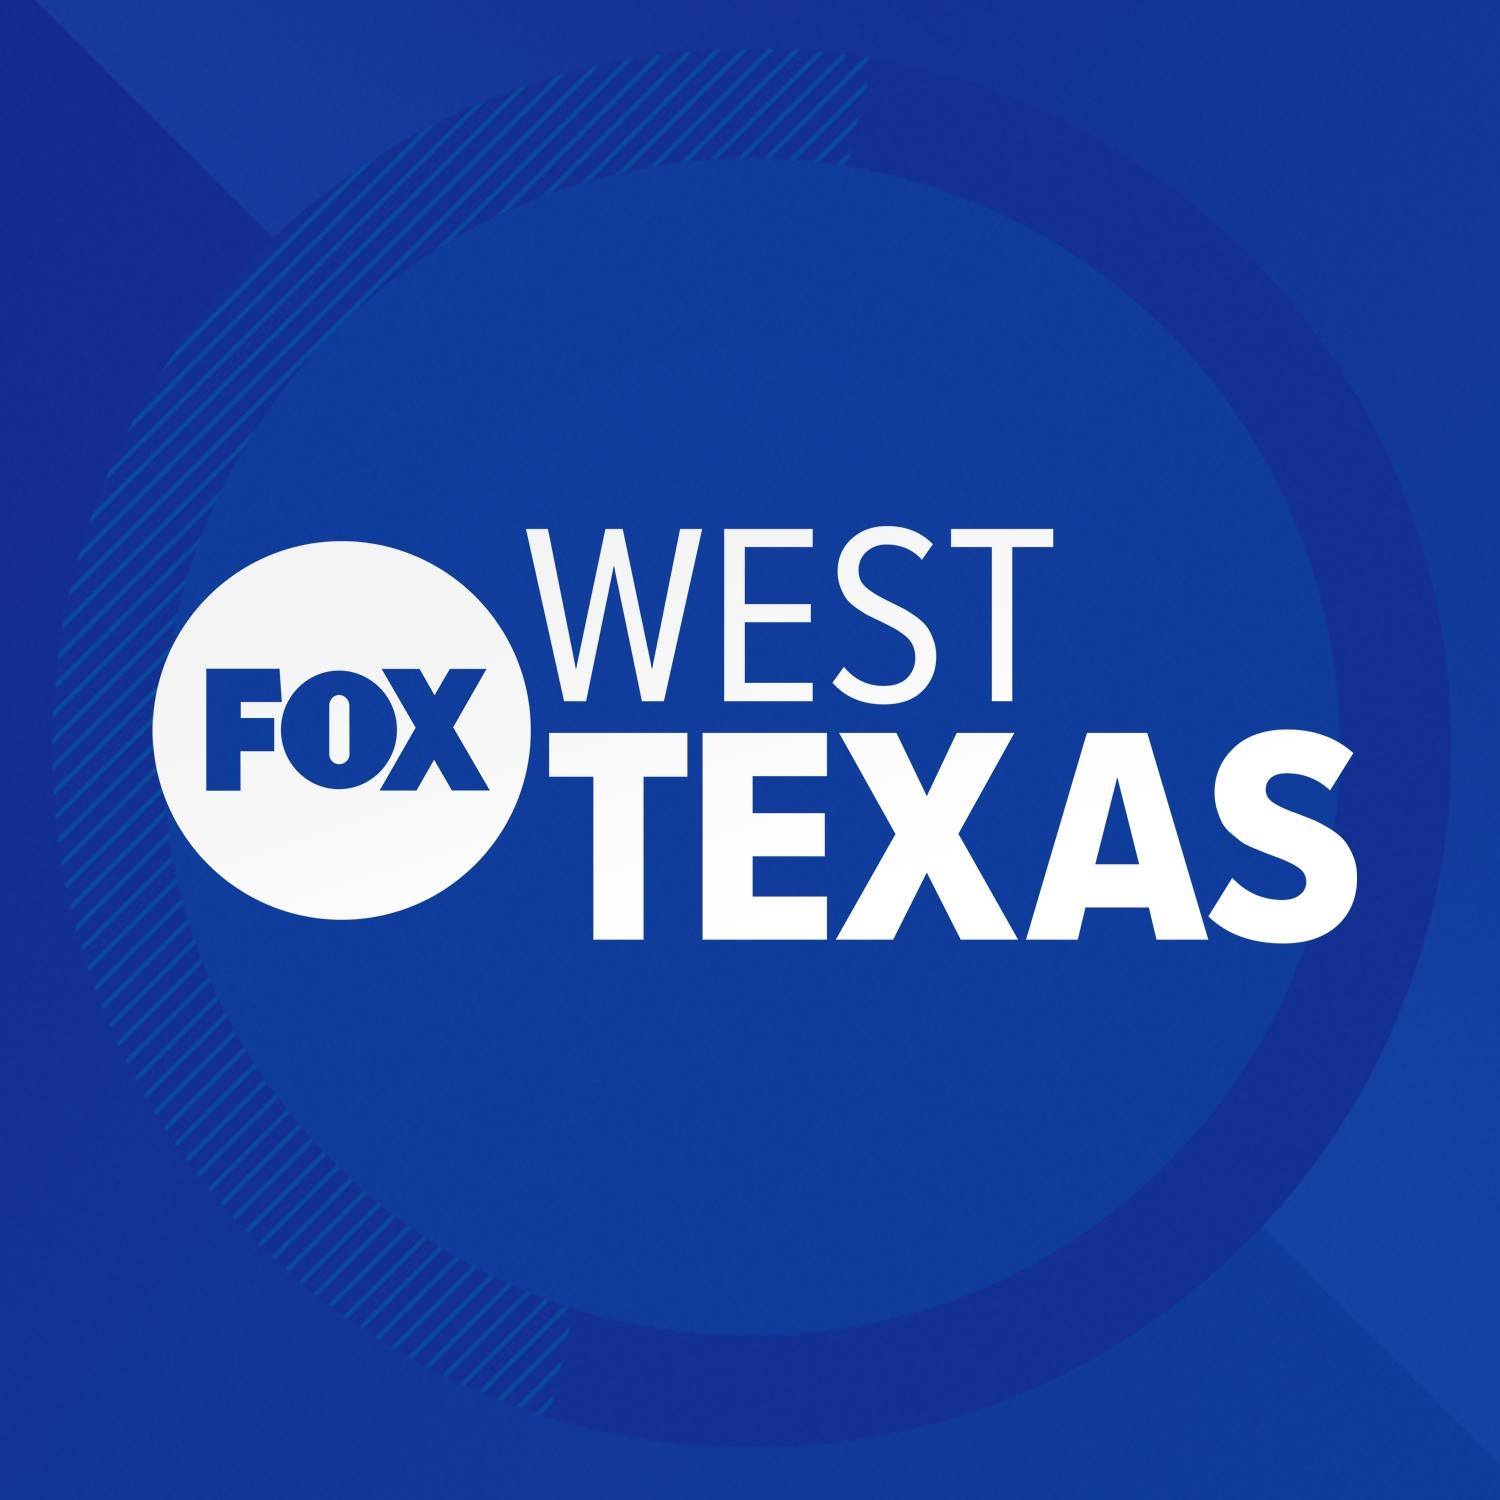 FOX West Texas logo